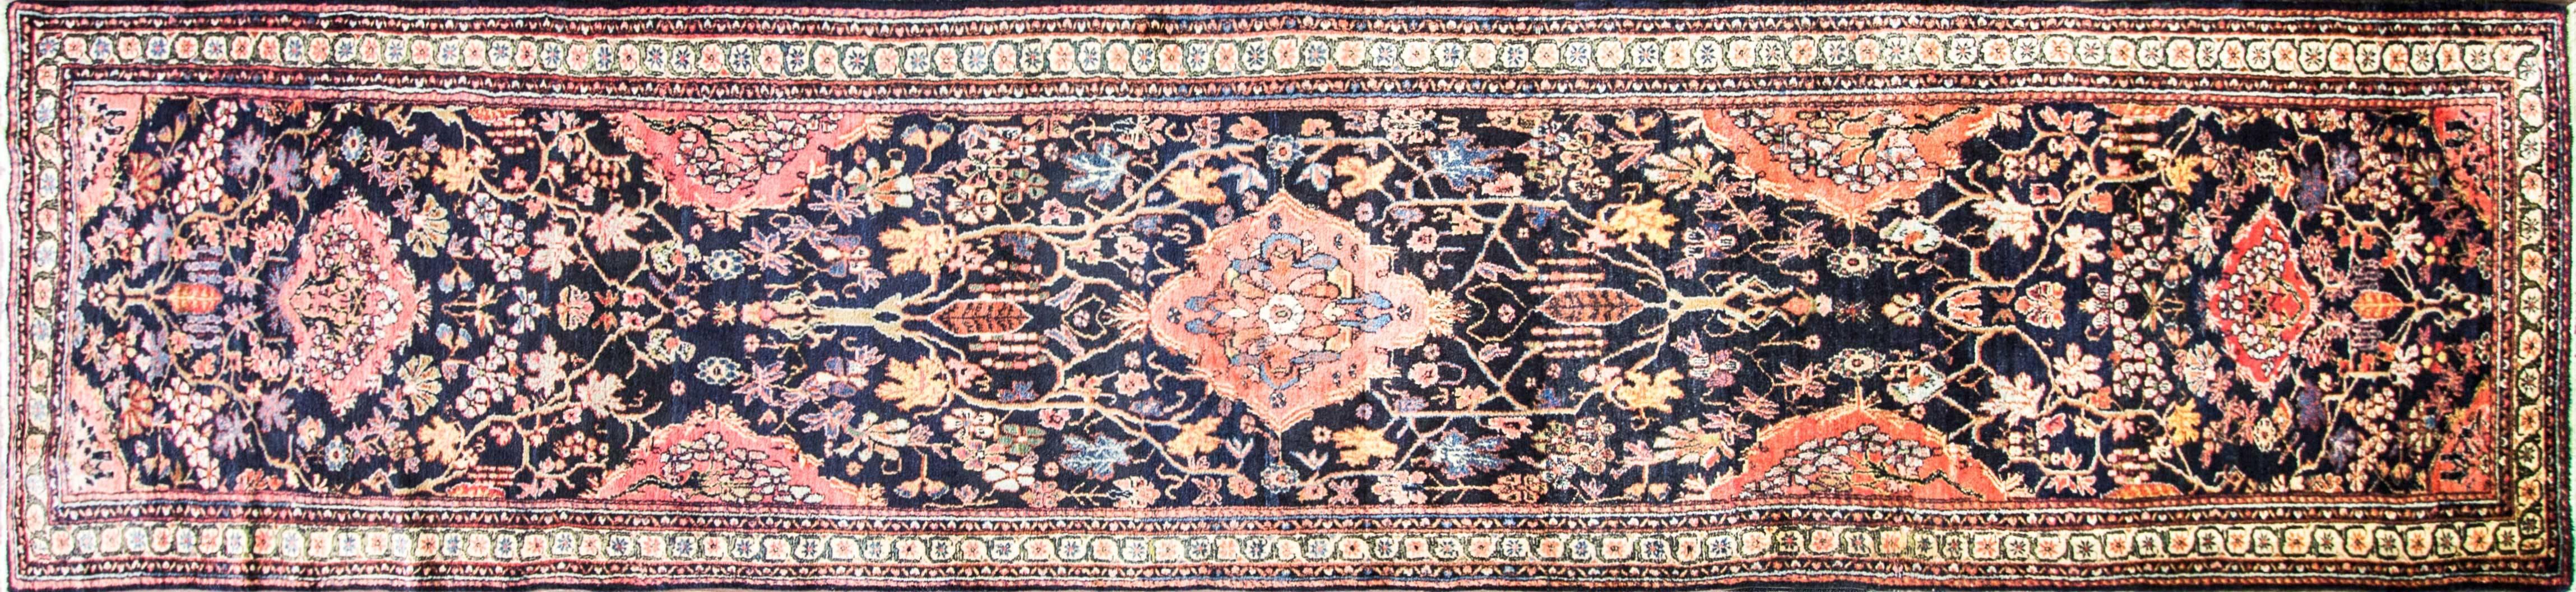 La tribu des Bakhtiari, basée à Chahar Mahaal et Bakhtiari, est réputée pour ses tapis et ses tissages. Ils tissent des tapis exportés dans le monde entier depuis le début du XIXe siècle. Mesures : 3'6